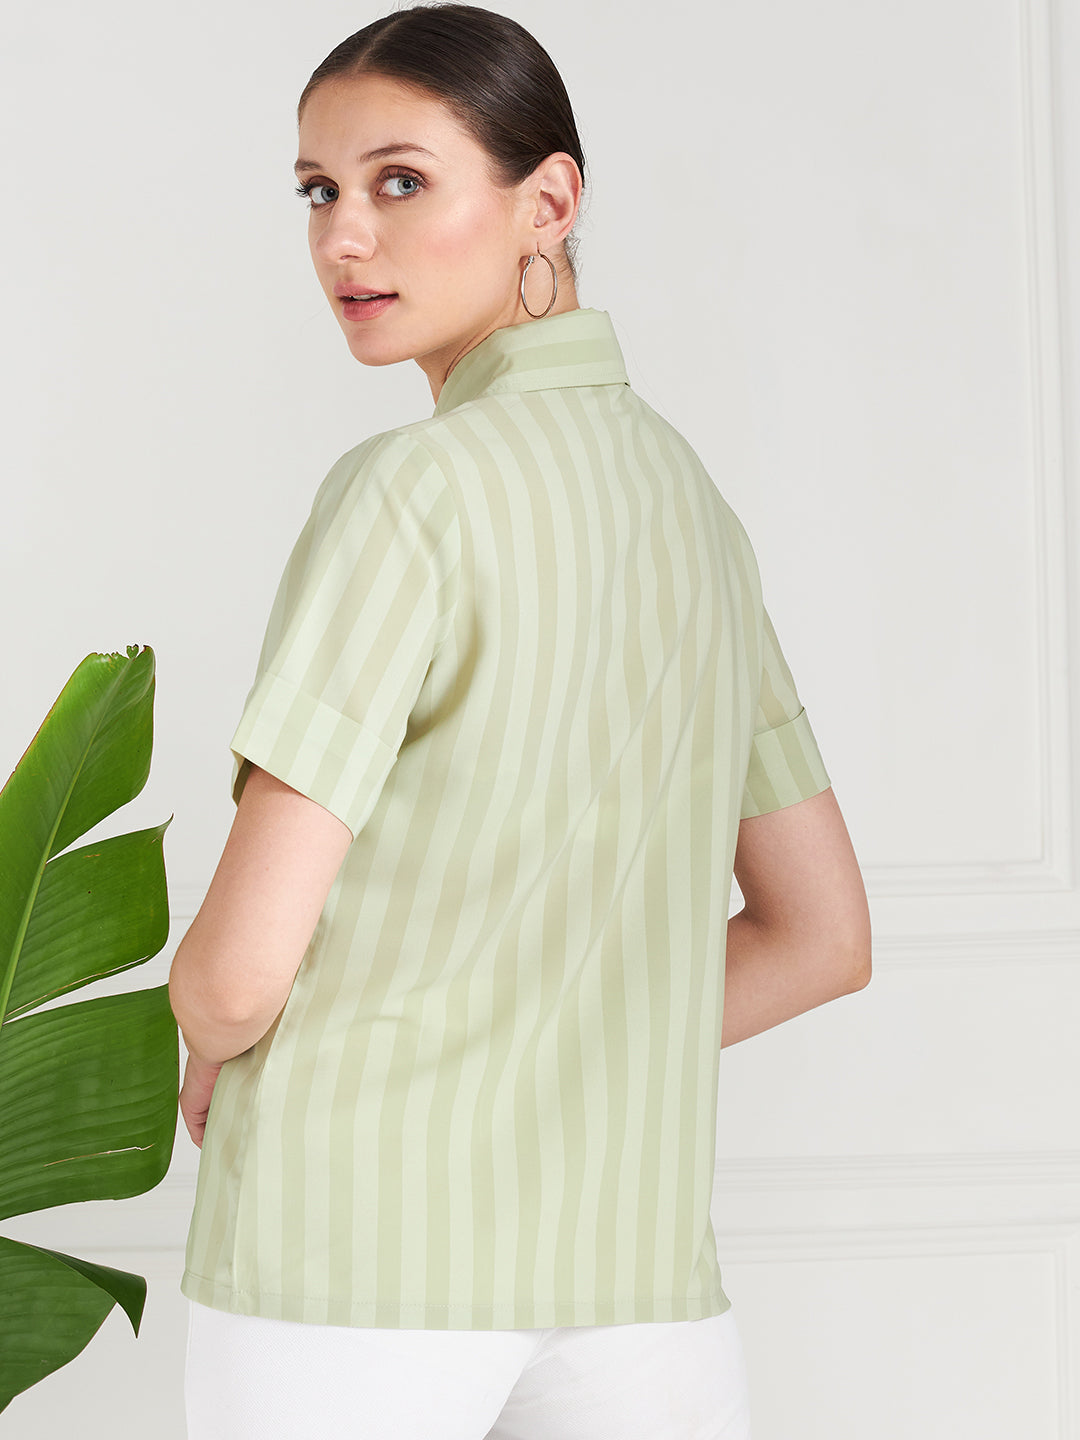 Athena Green Striped Shirt Style Top - Athena Lifestyle